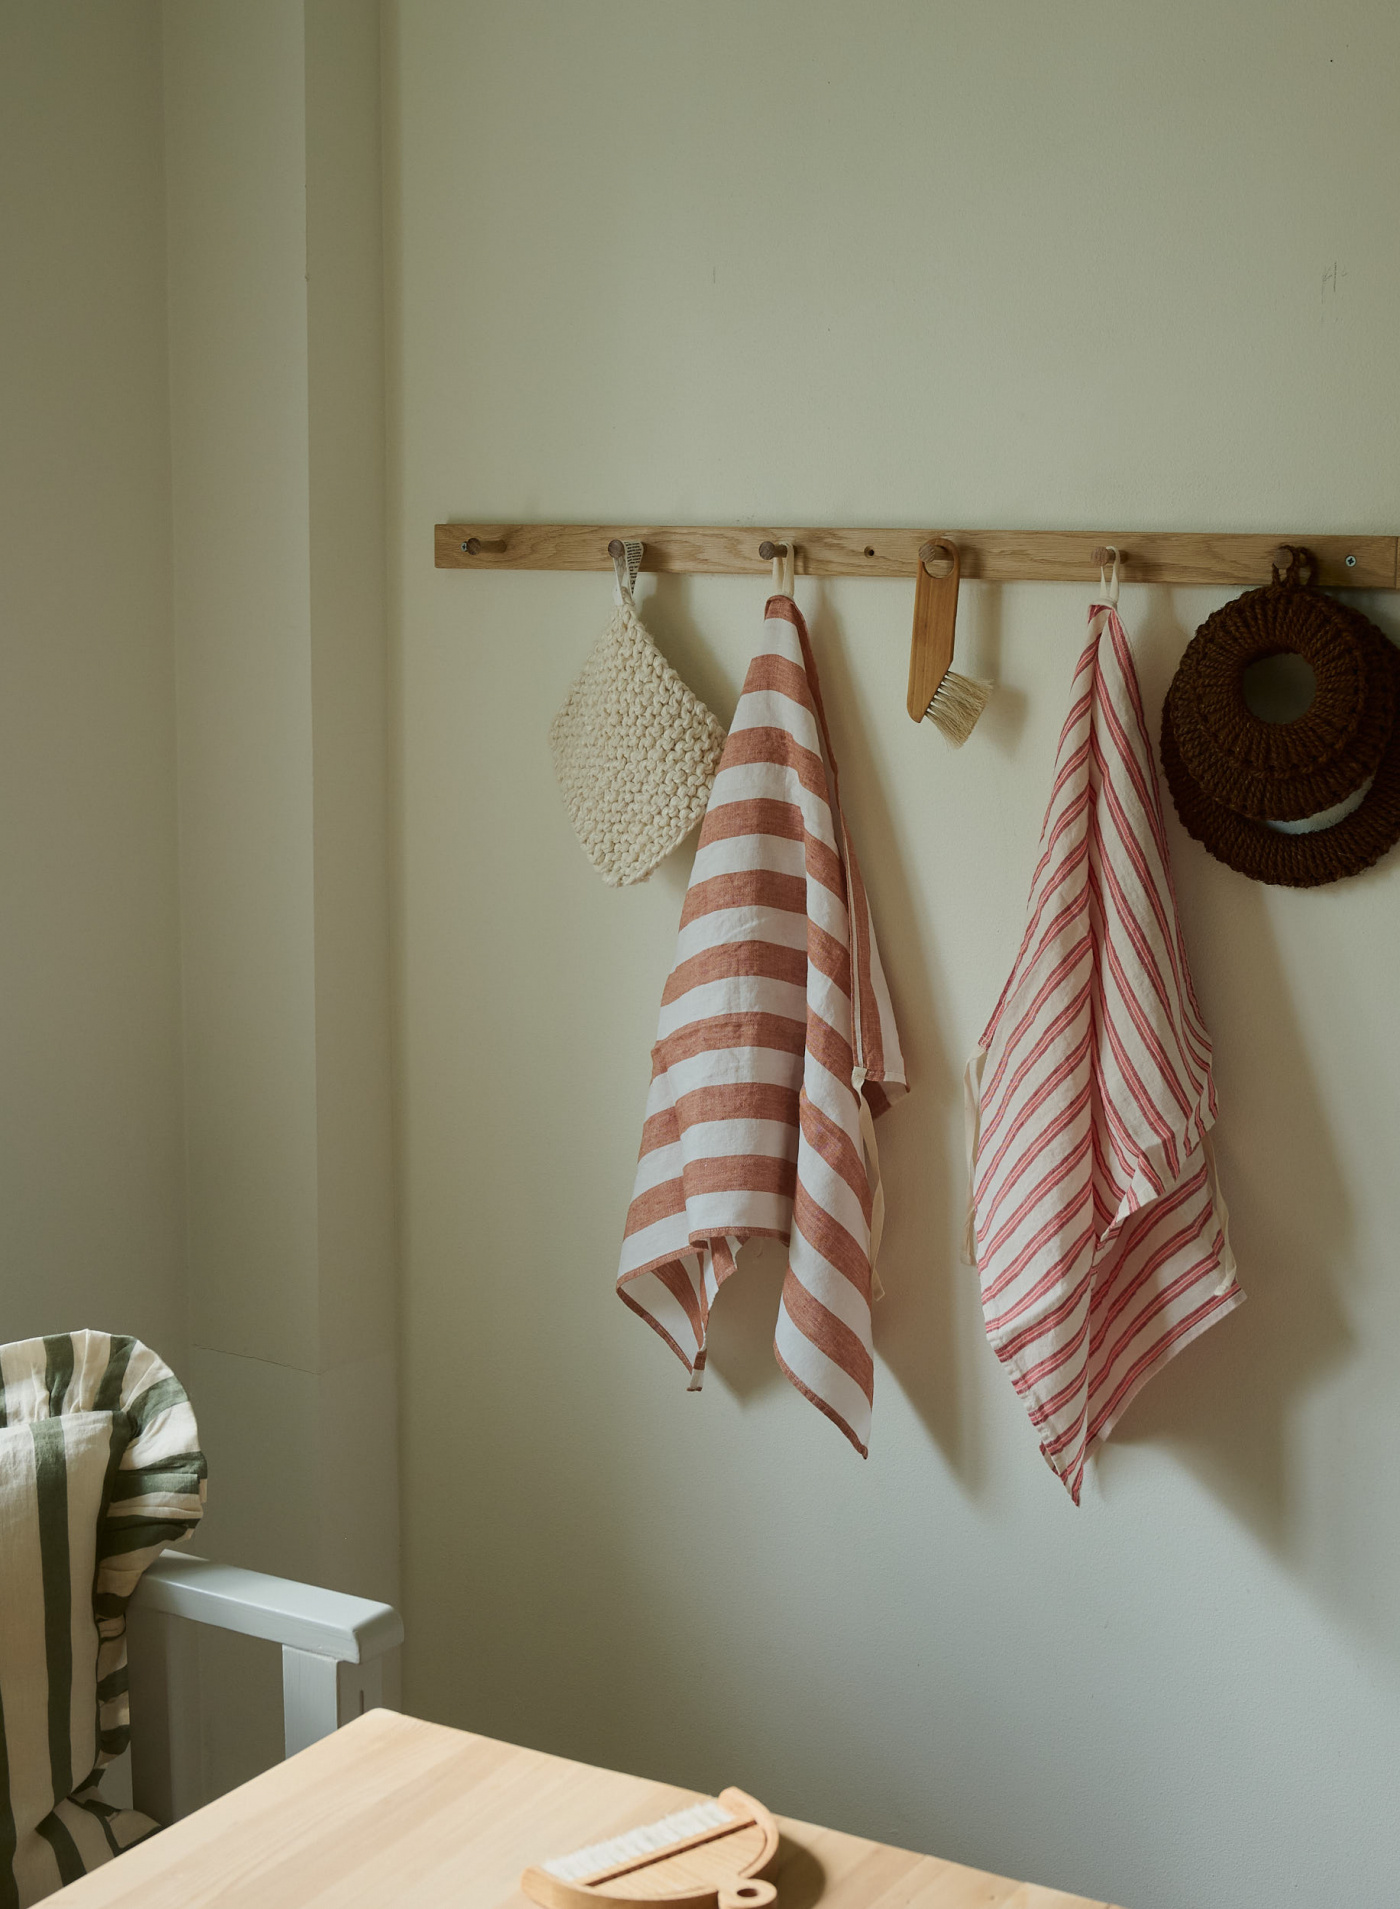 Kitchen Towel Summer Mattress Stripe